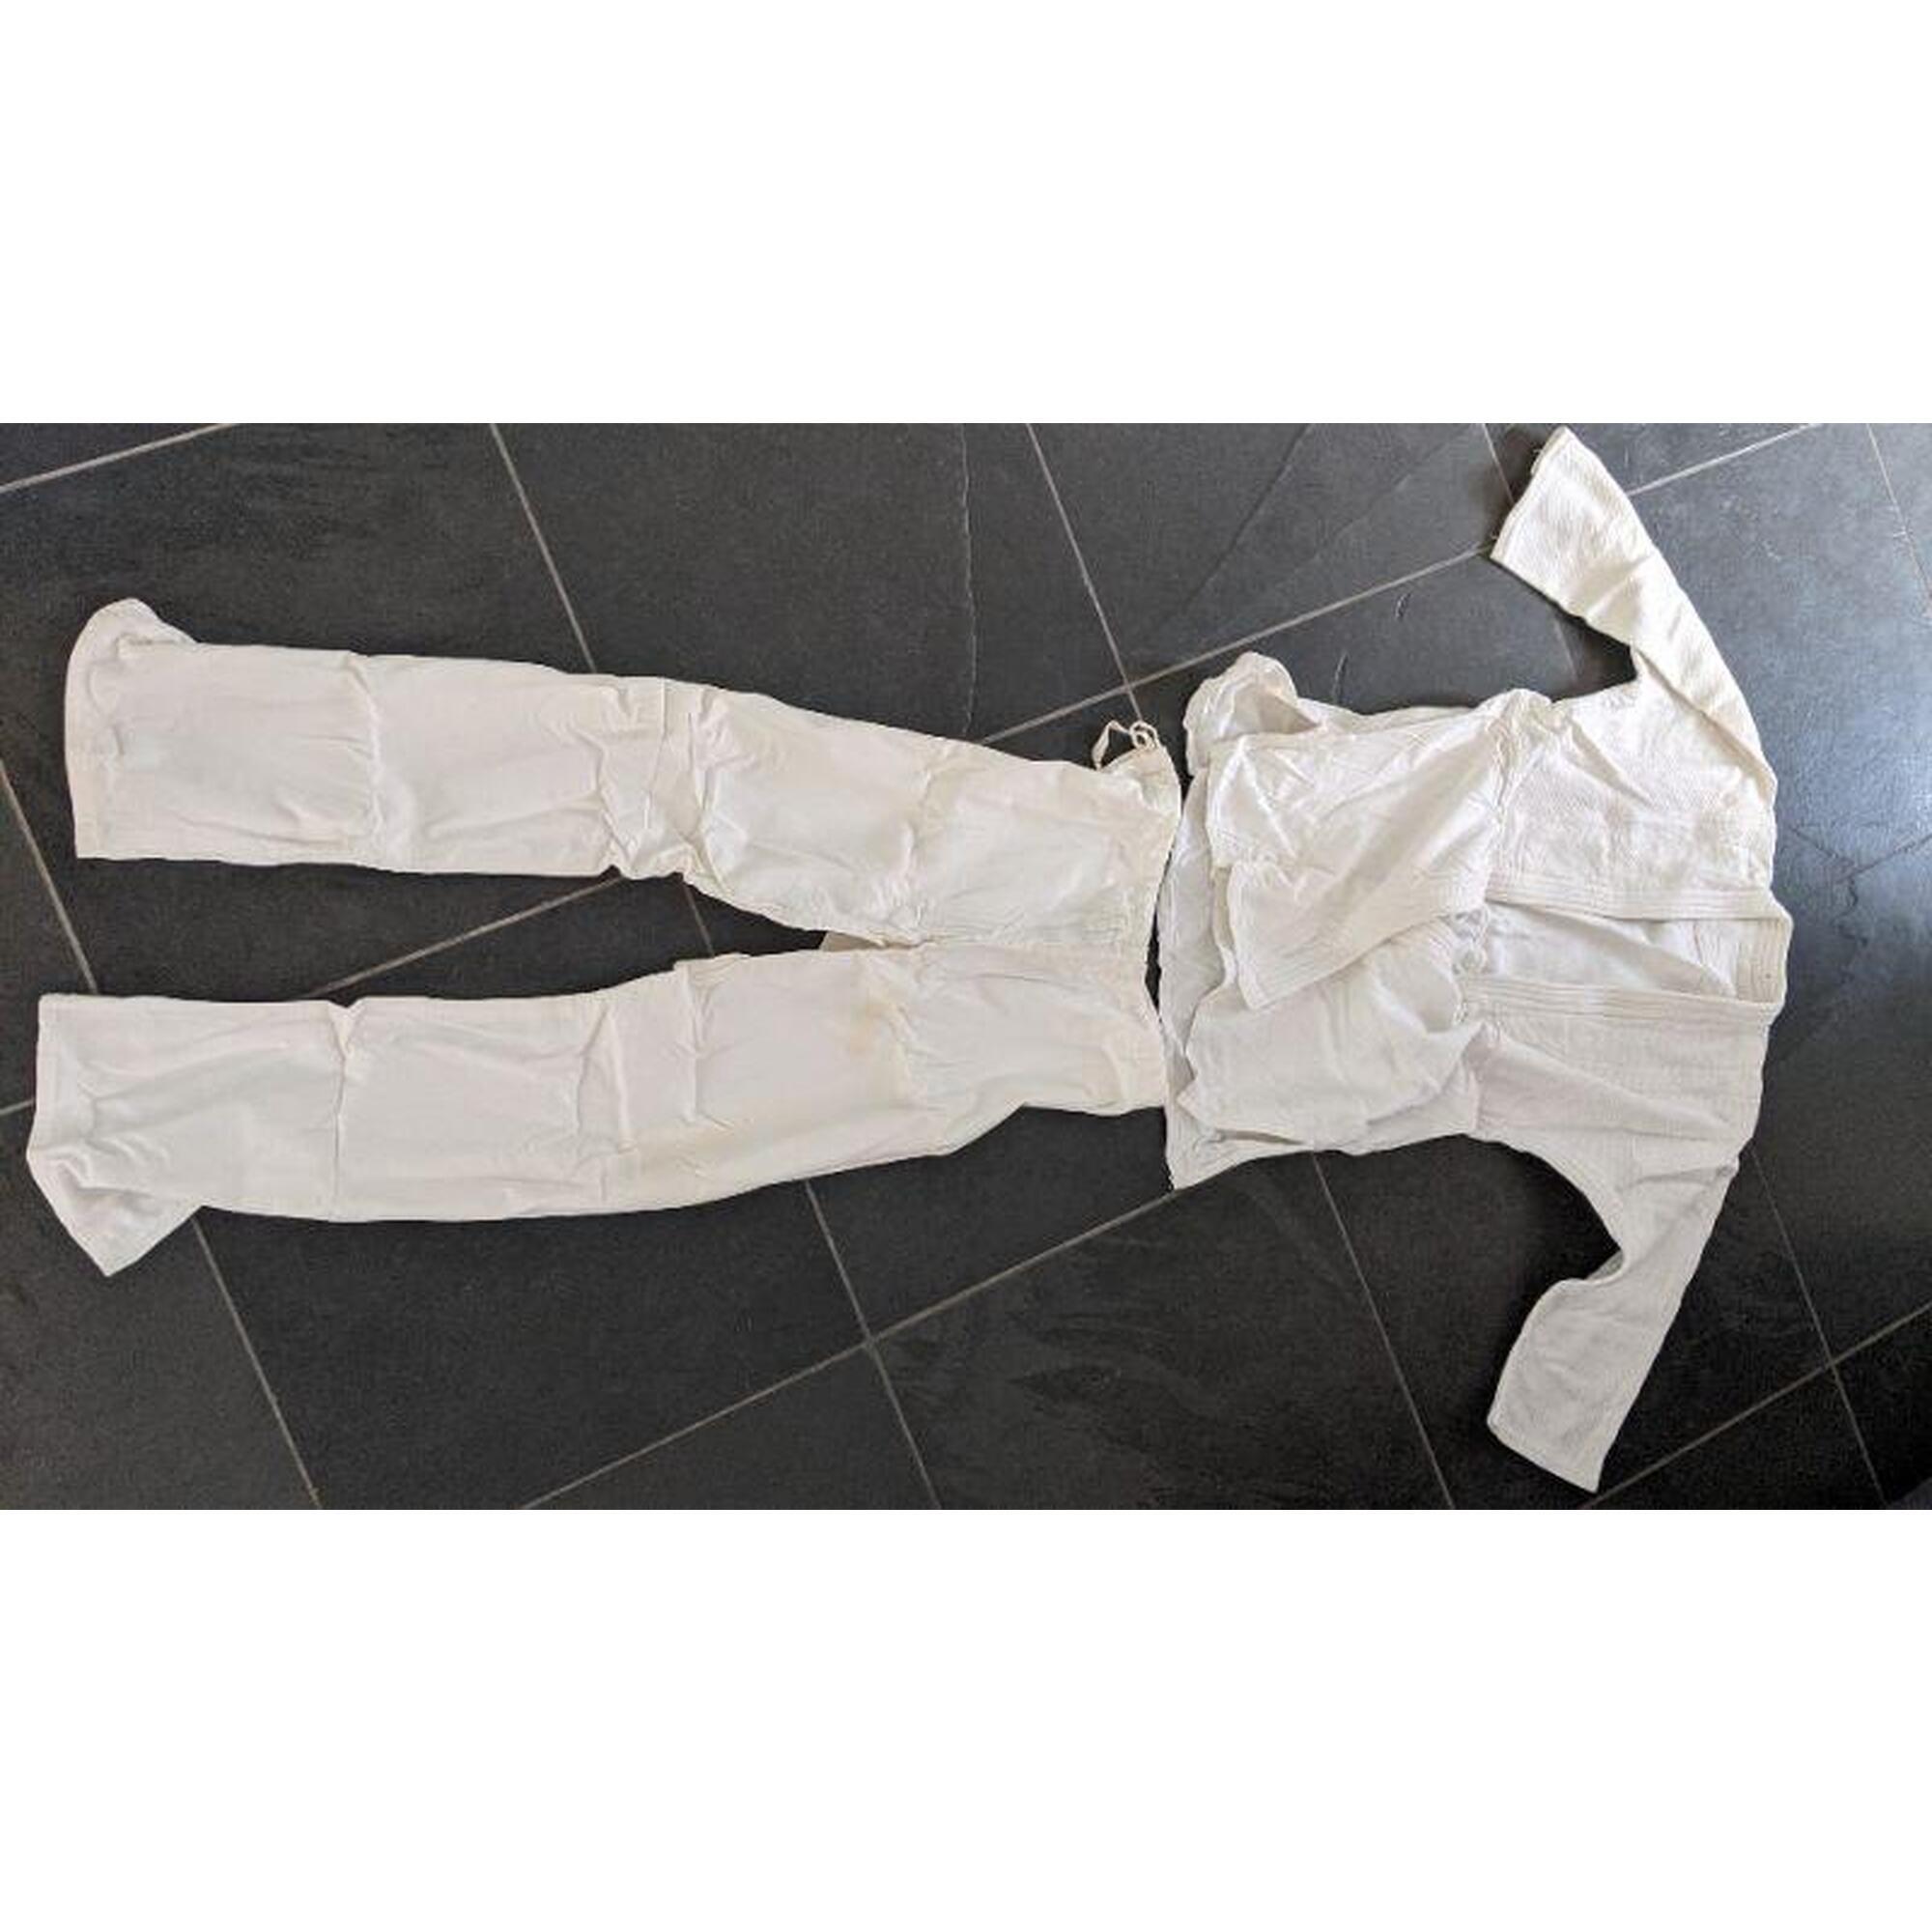 C2C - Tenue de capoeira - ensemble pantalon et chemise- Taille L